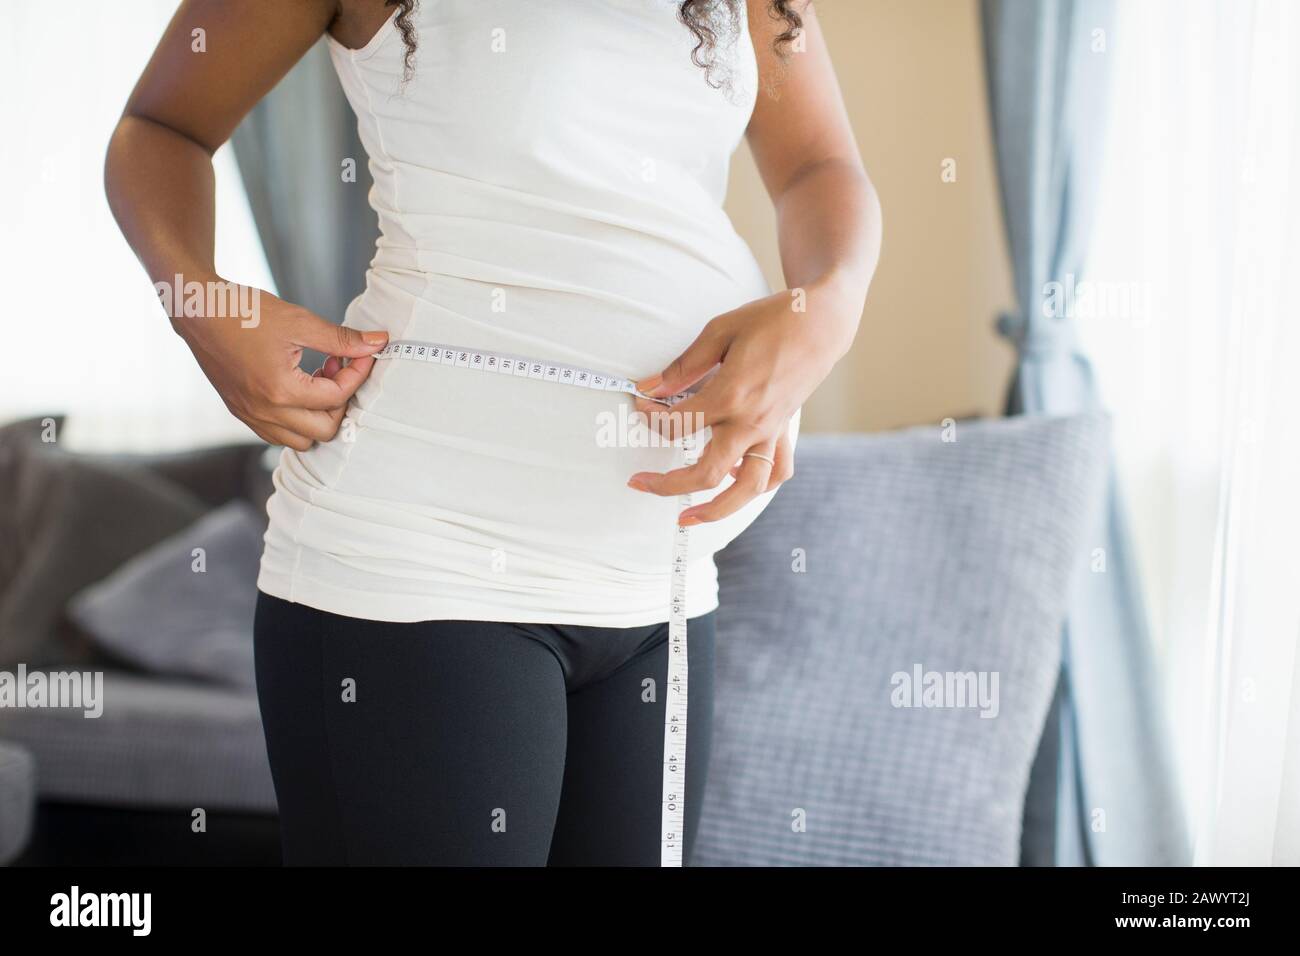 Femme enceinte estomac de mesure avec ruban de mesure Banque D'Images